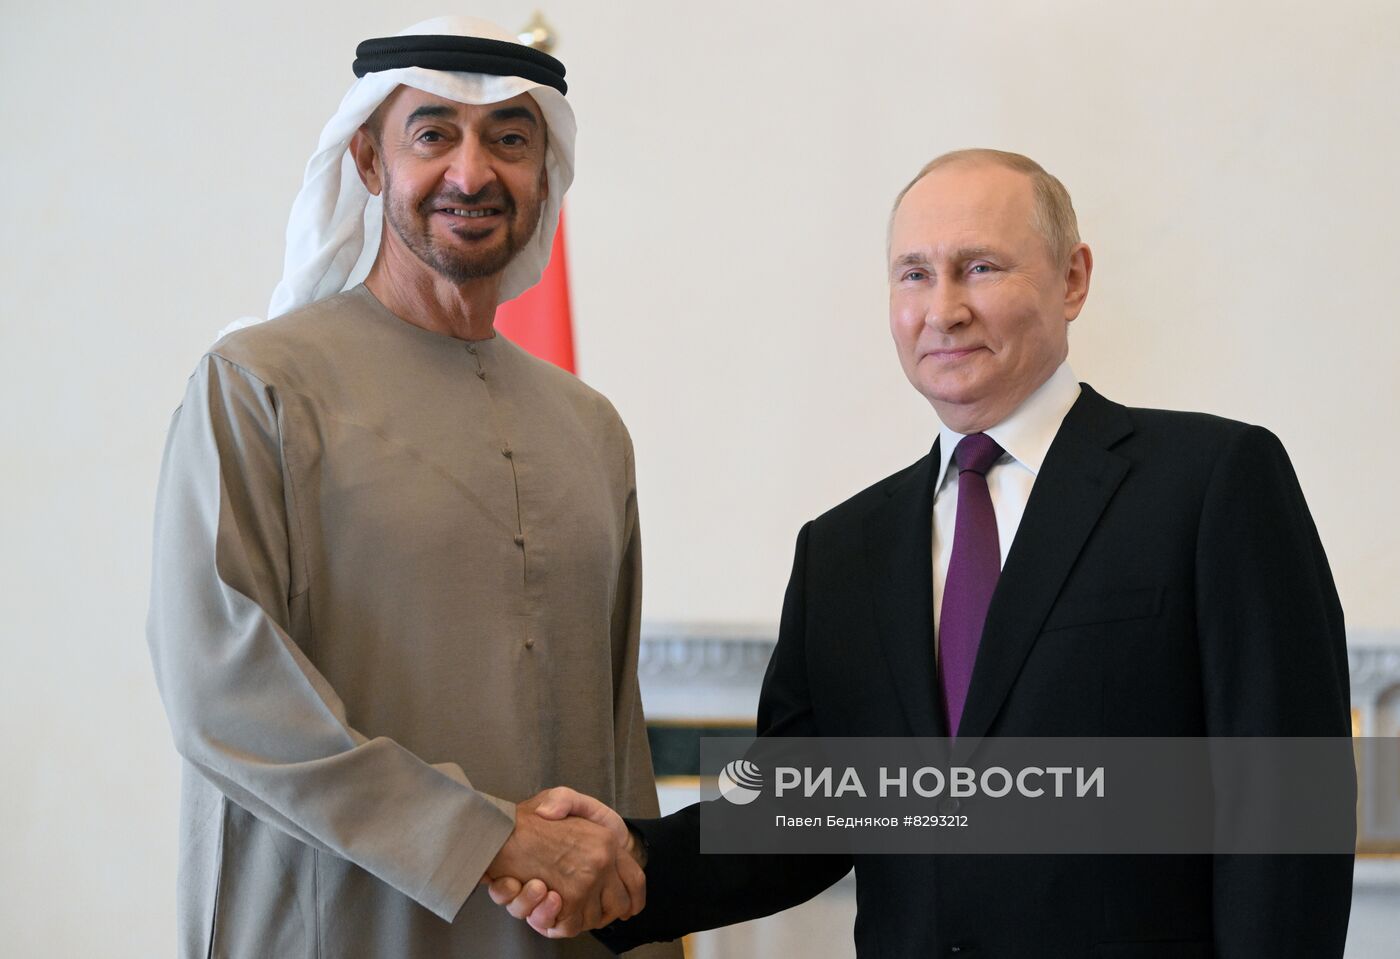 Встреча президента РФ В. Путина с президентом ОАЭ М. бен Заидом Аль Нахайяном